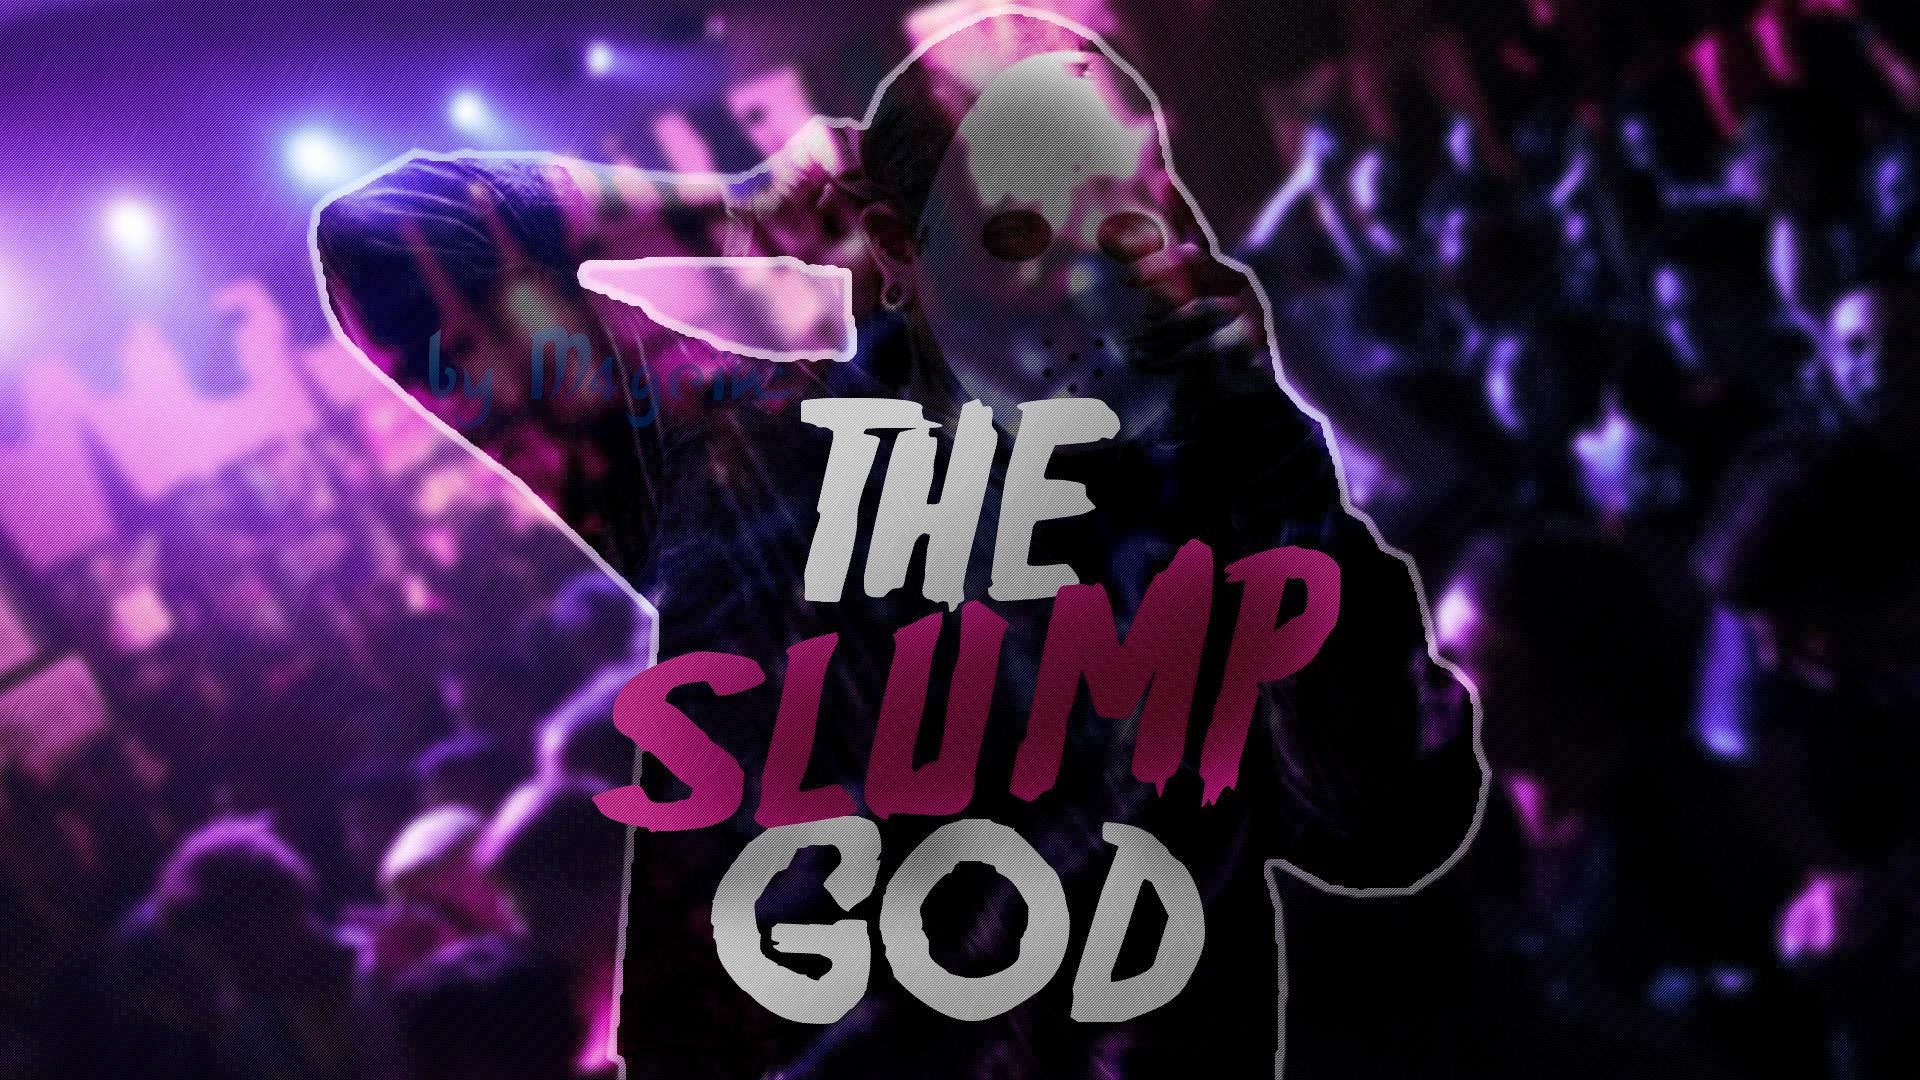 Download Ski Mask The Slump God Wallpaper, HD Background Download